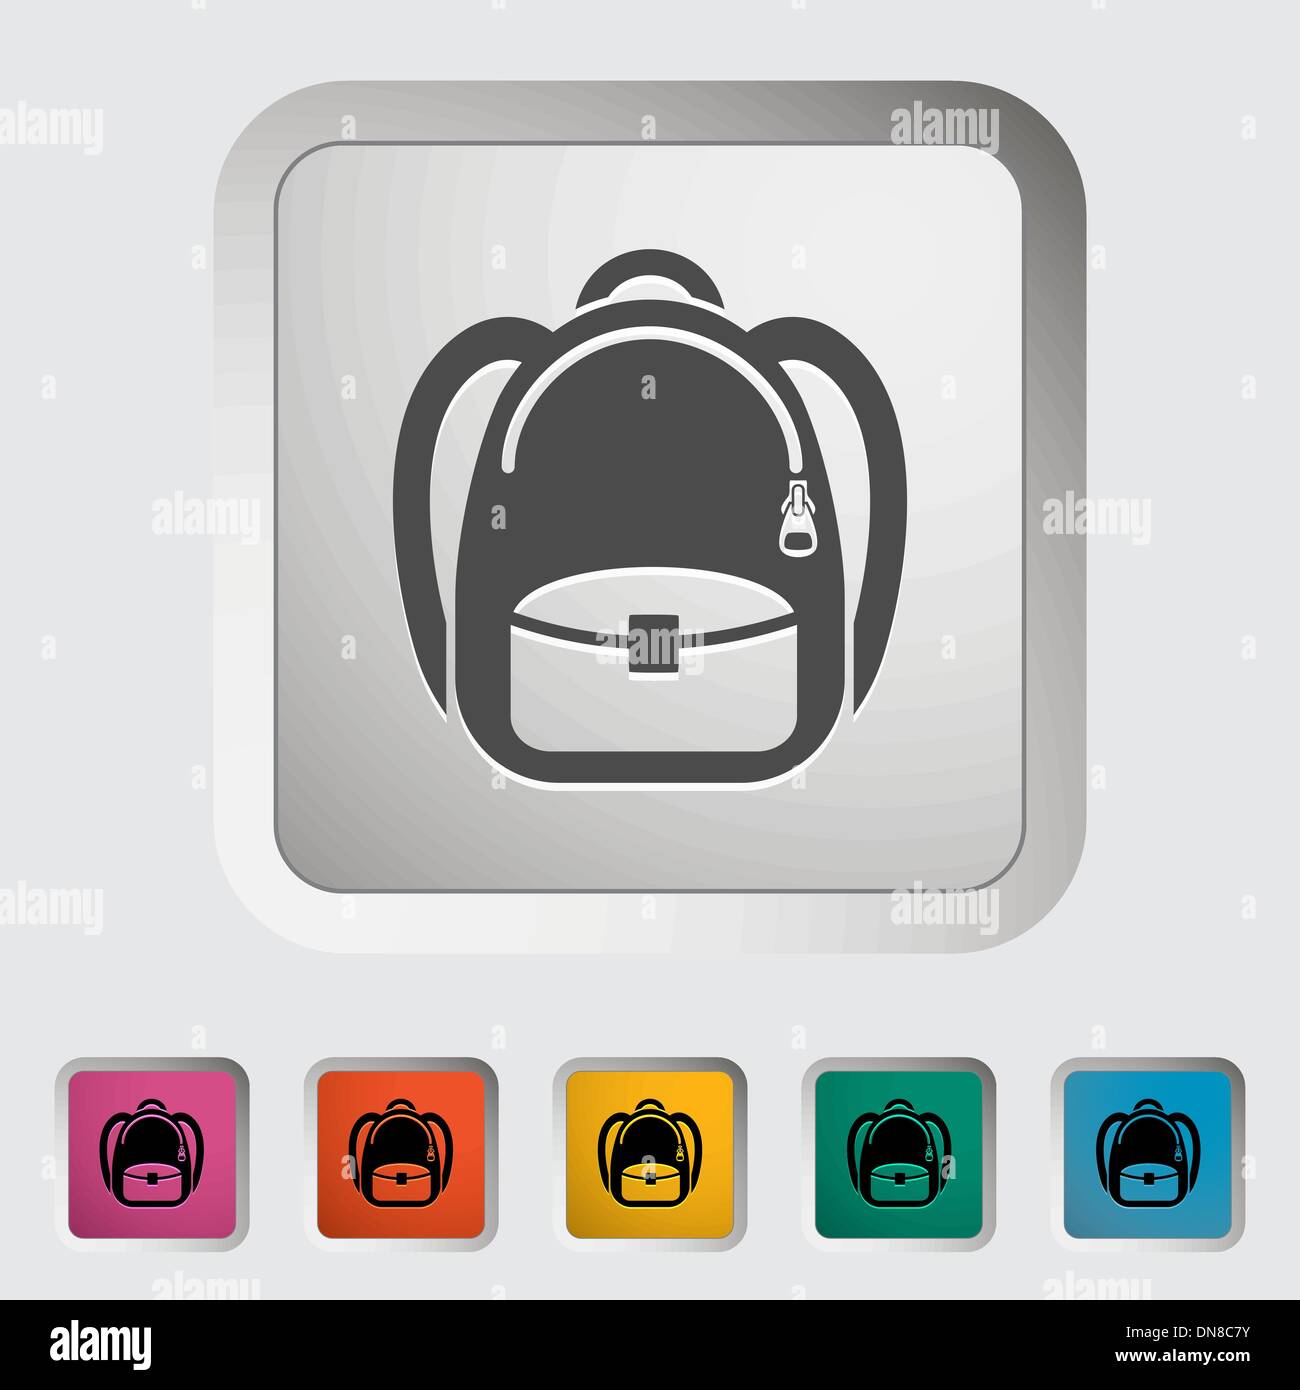 Schoolbag icon Stock Vector